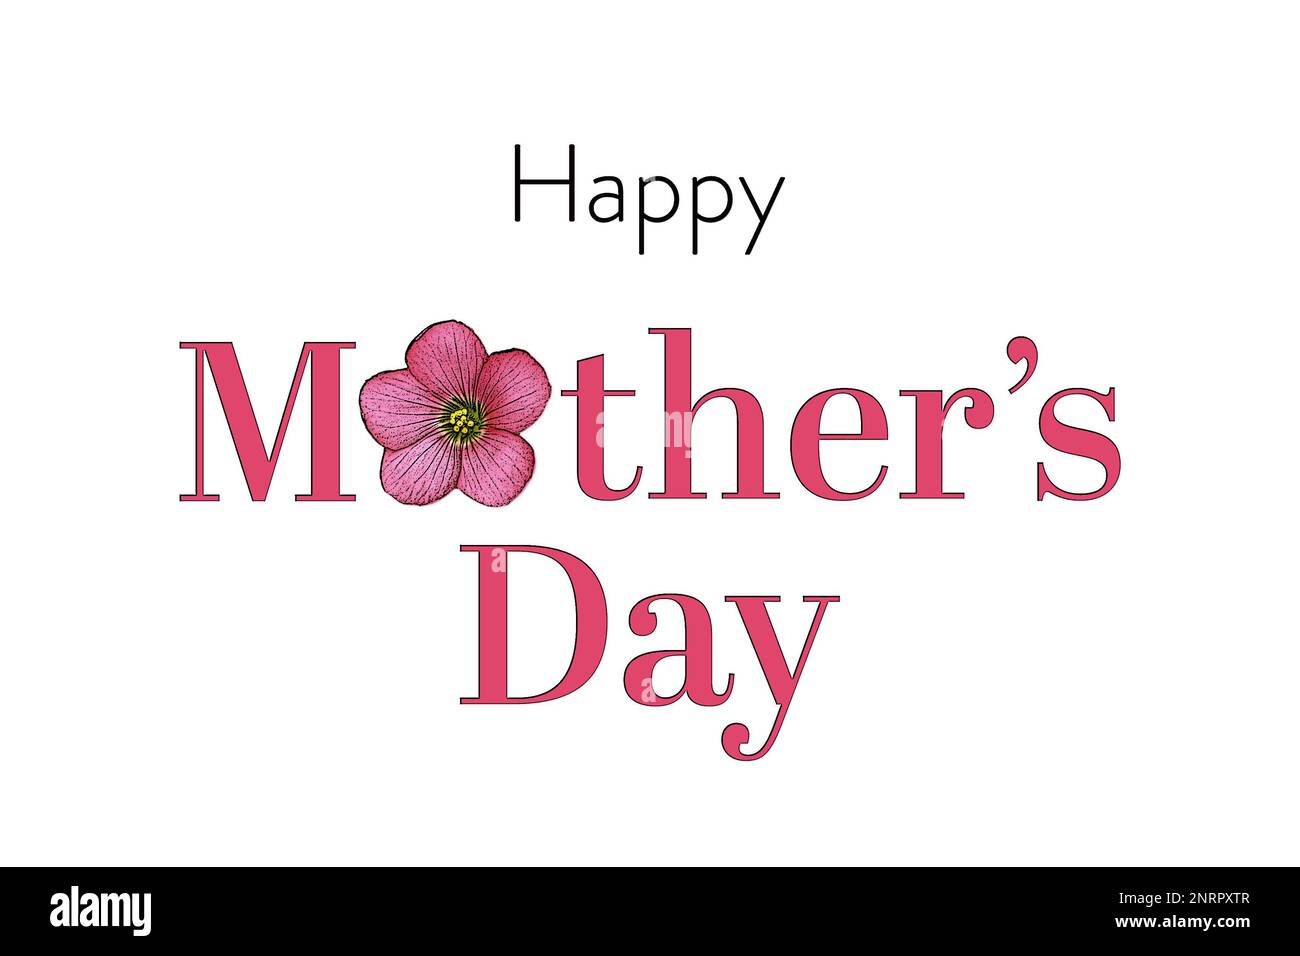 Kreative Muttertagskarte mit pinkfarbenen Sorrel-Blumen Illustration isoliert auf weißem Hintergrund und grußtext zum Muttertag Stockfoto